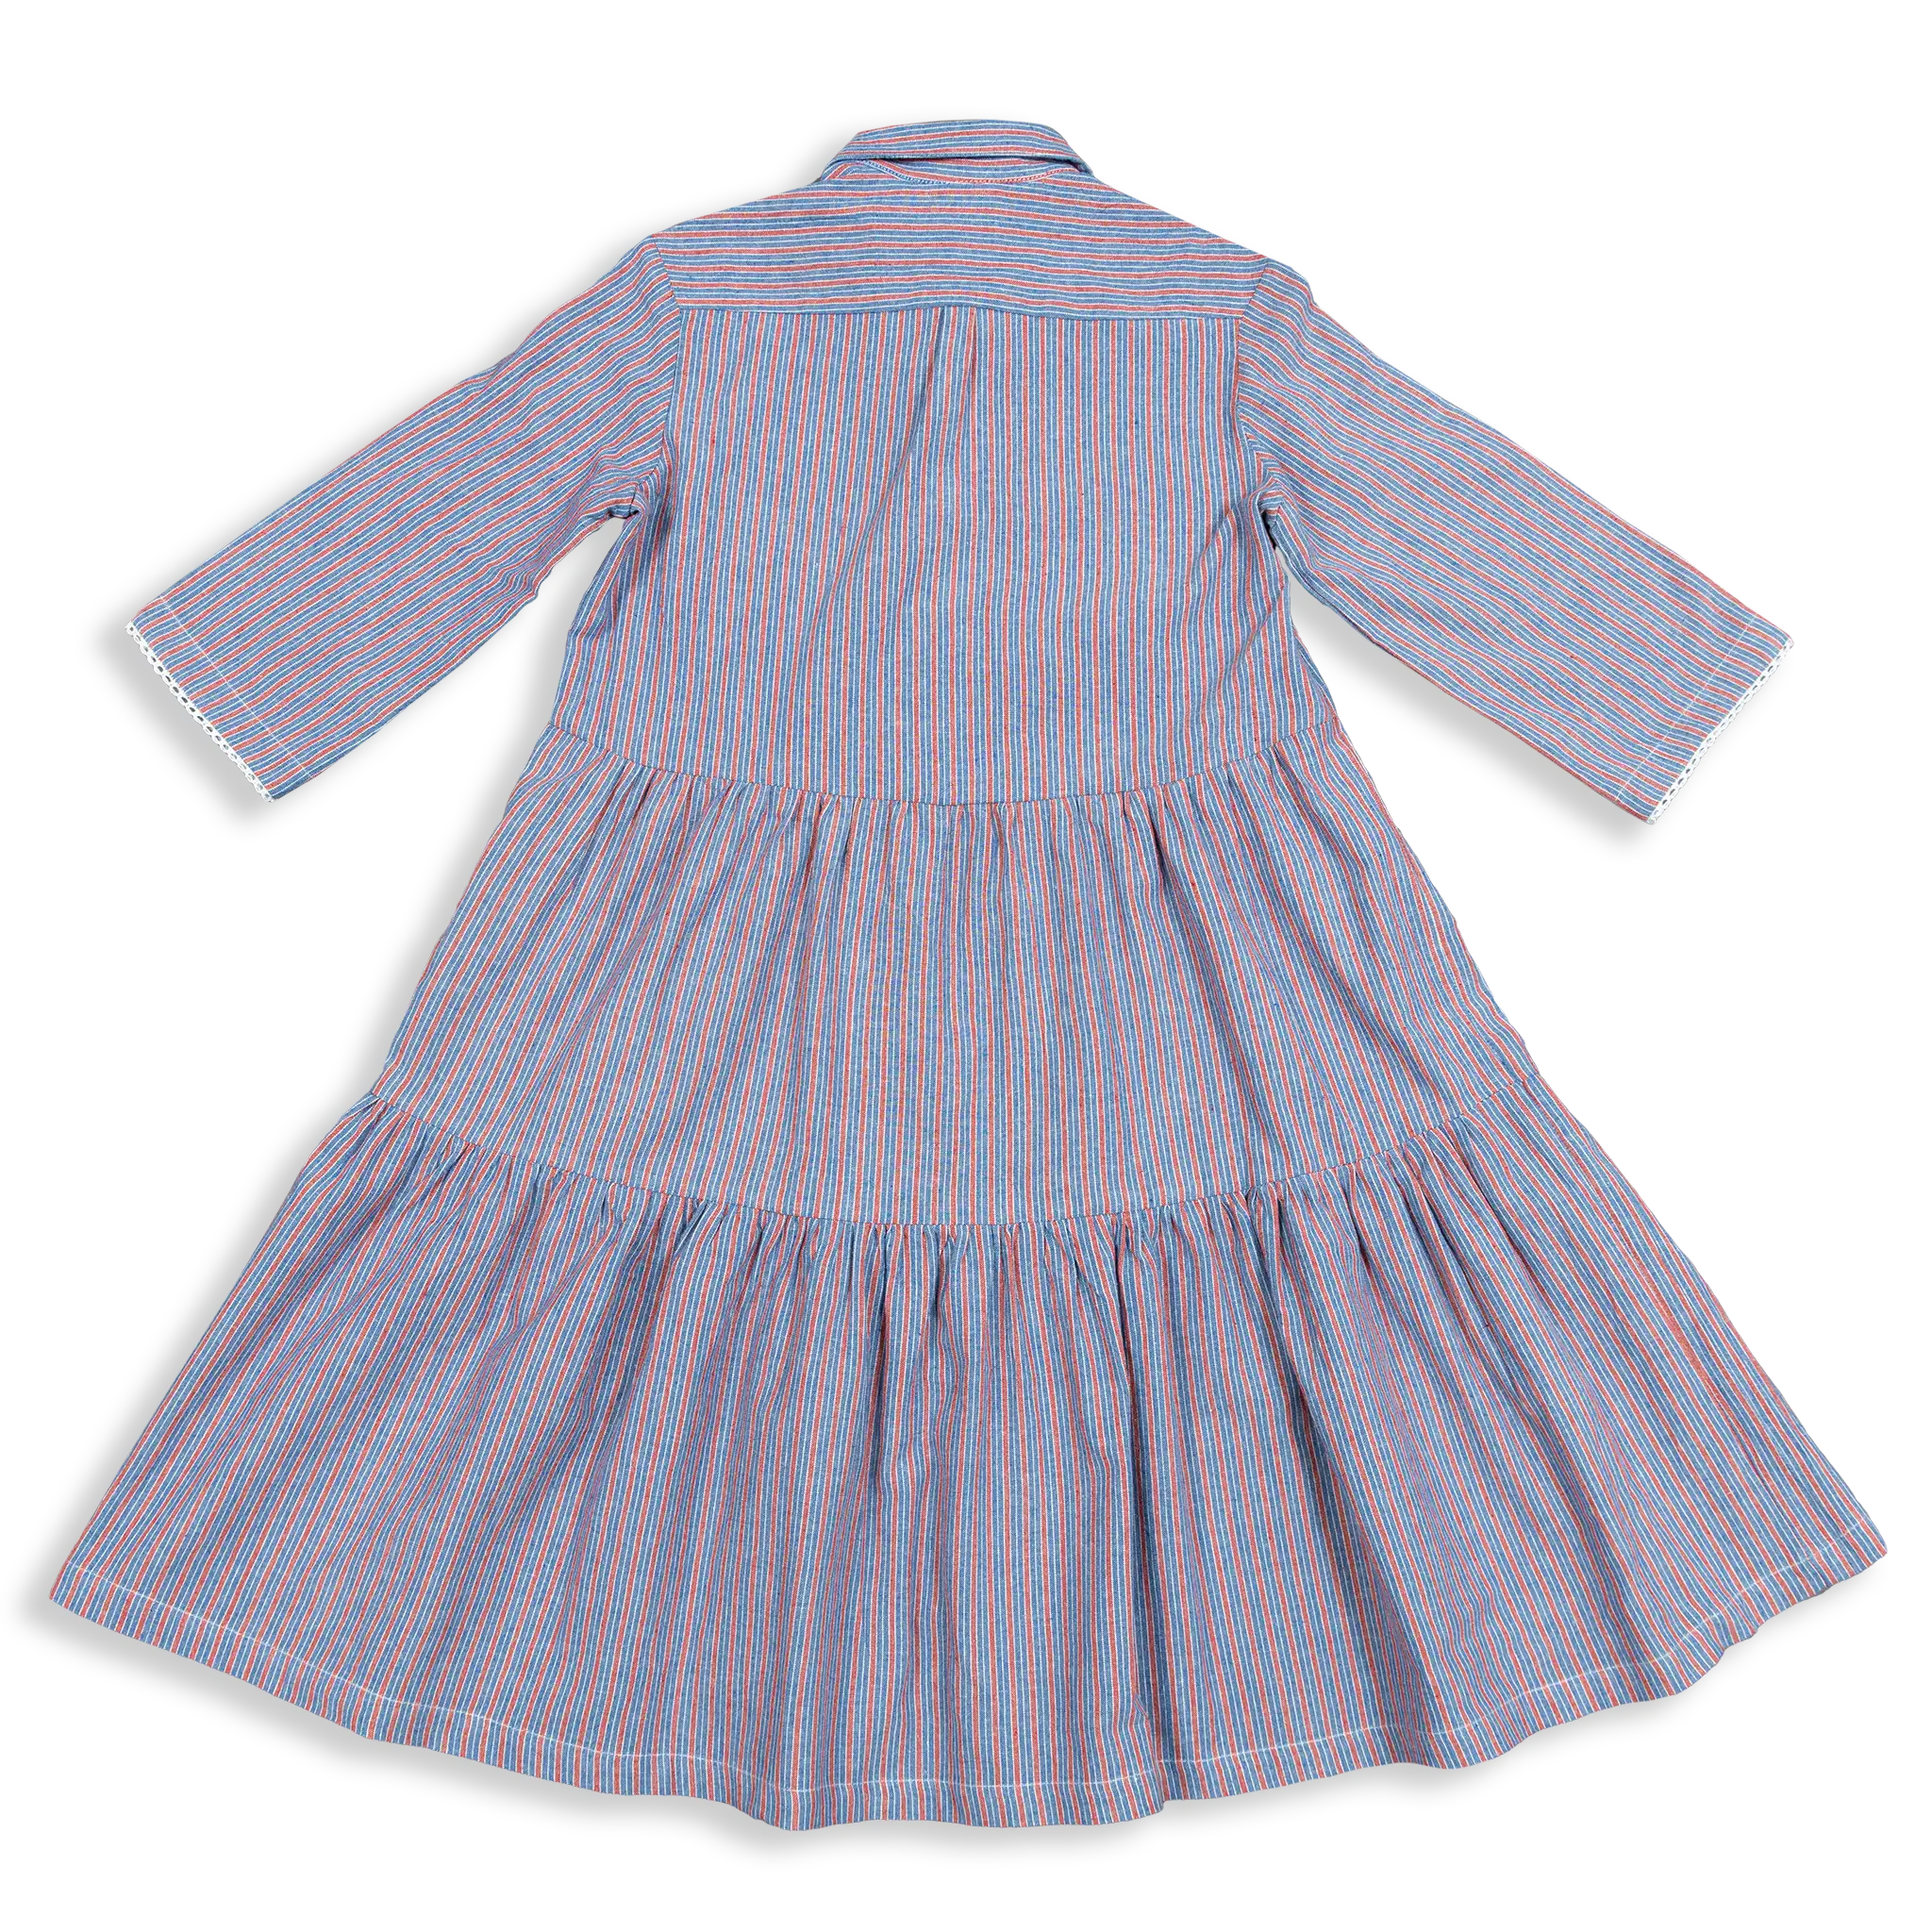 Terraced Hills Twirly Girl Dress (8y-12y)